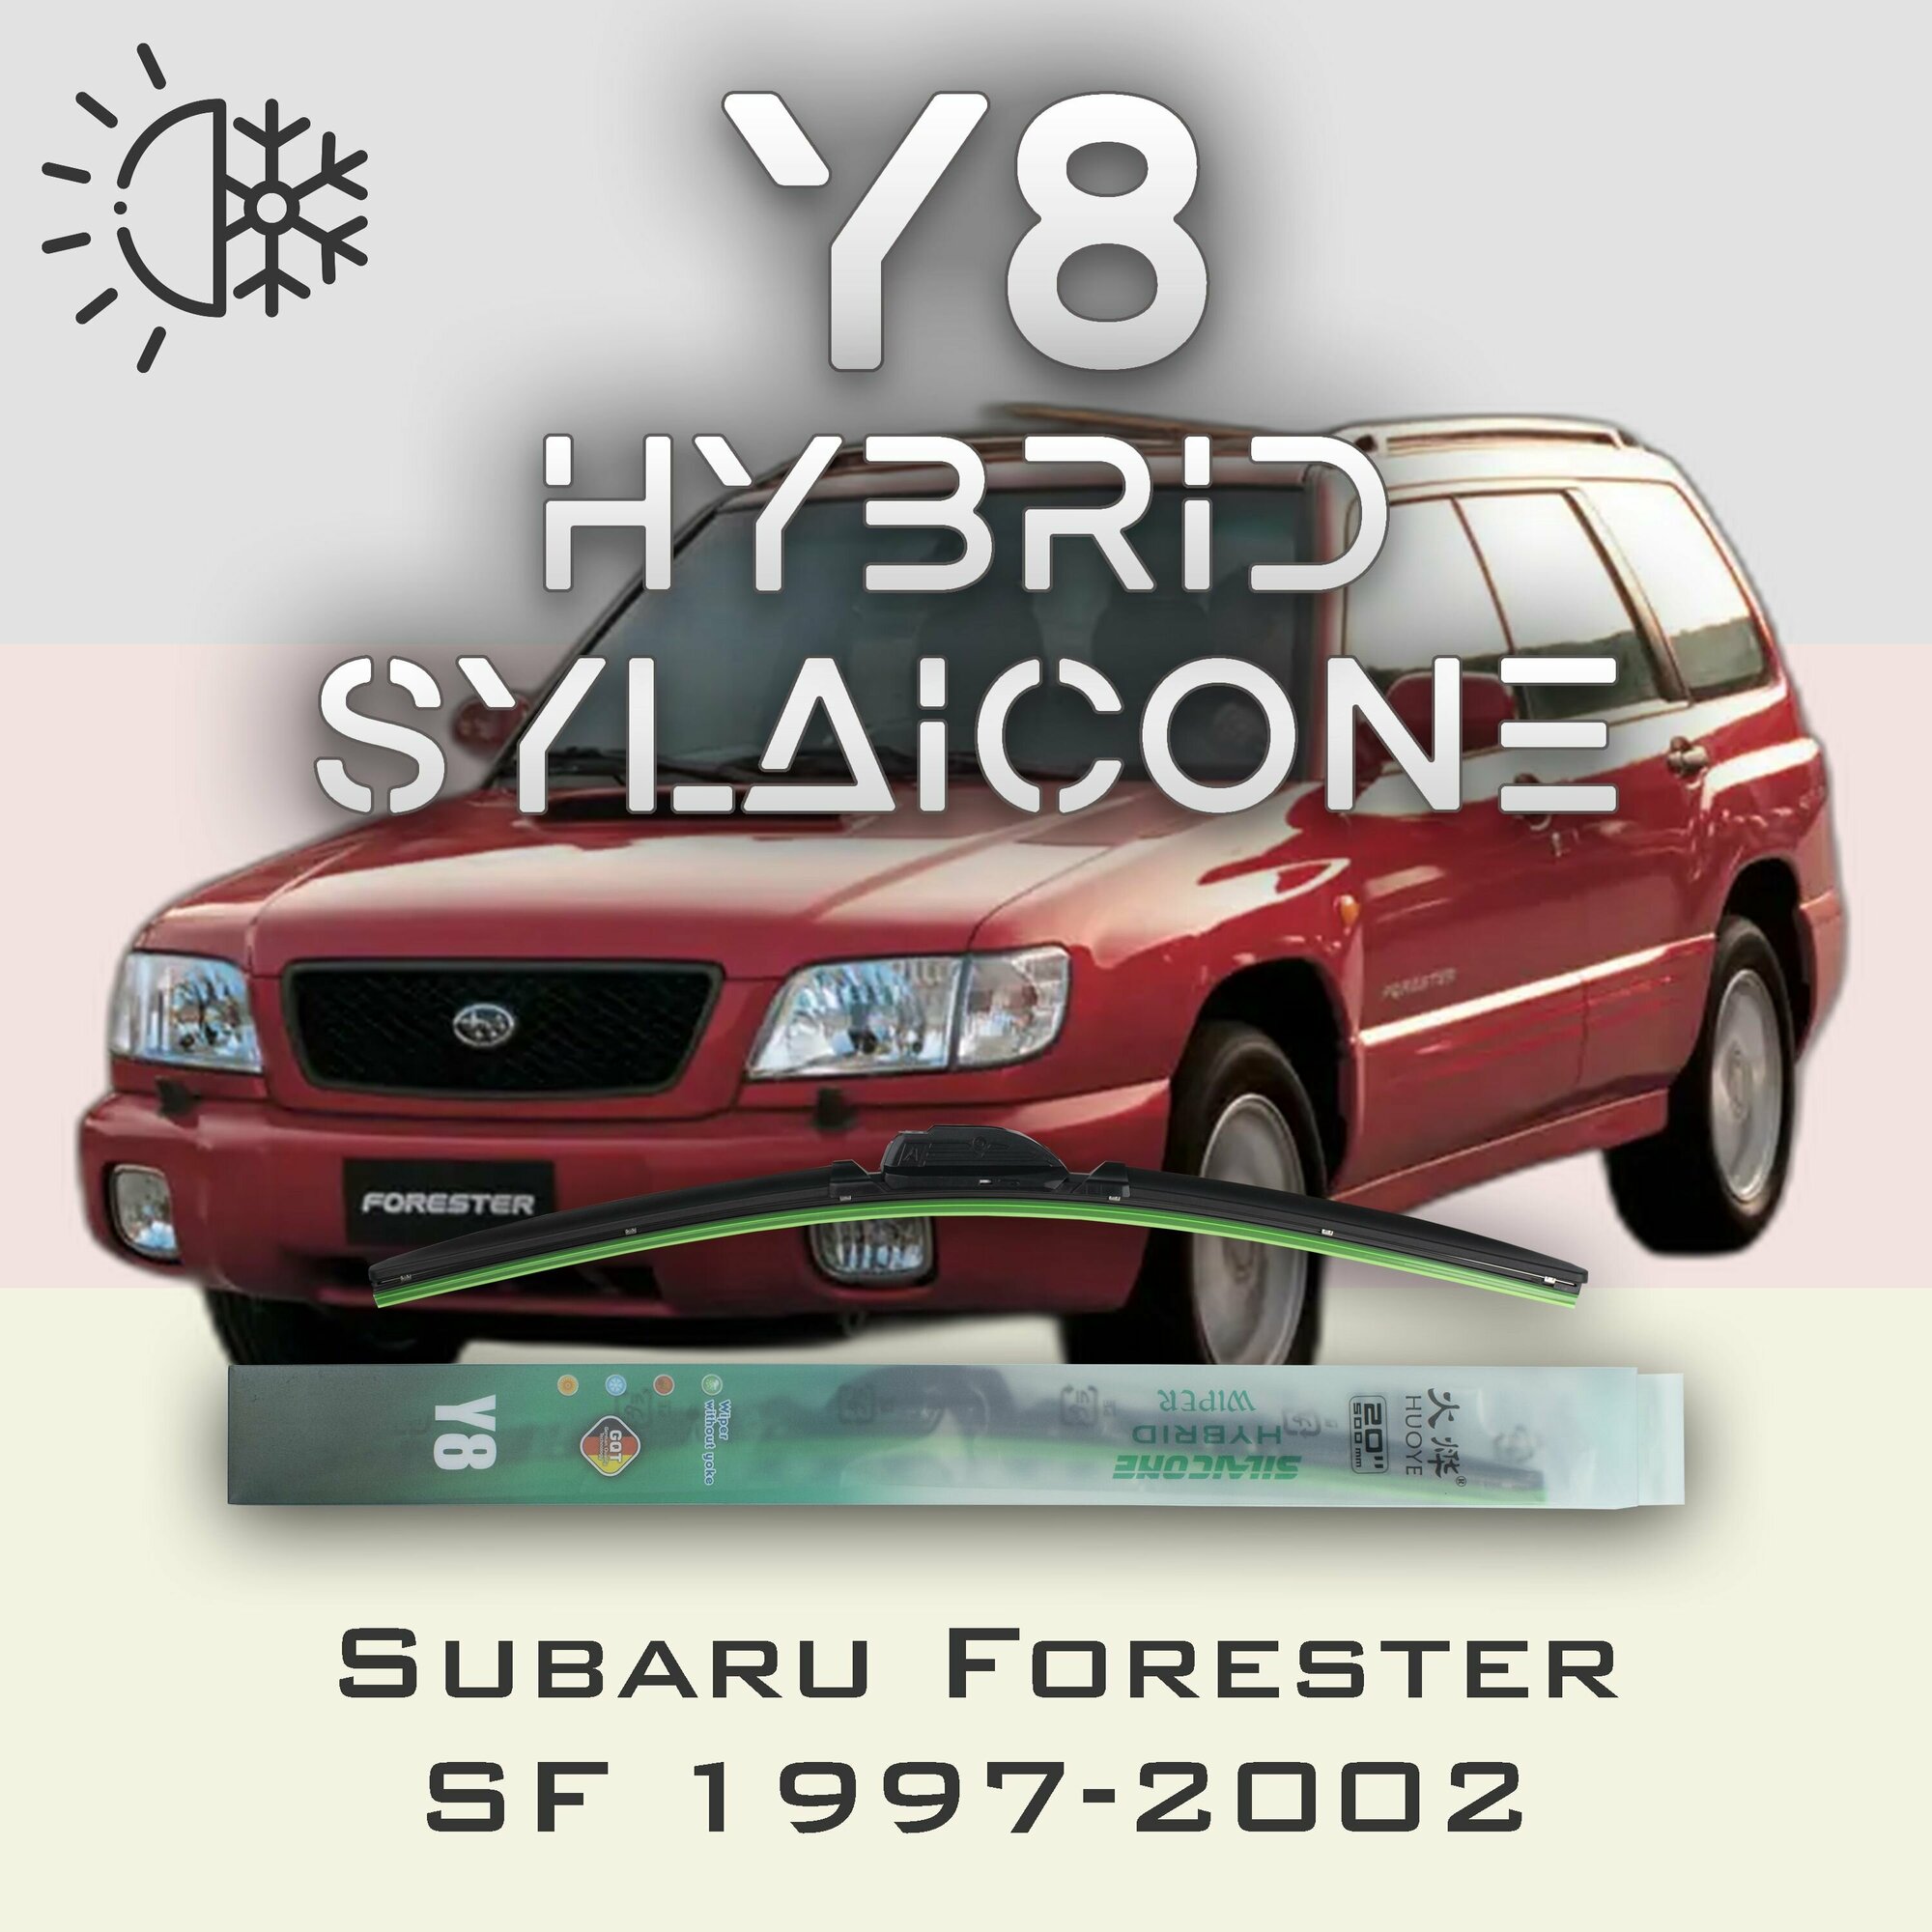 Комплект дворников 22" / 550 мм и 19" / 475 мм на Subaru Forester SF S10 1997-2002 Гибридных силиконовых щеток стеклоочистителя Y8 - Крючок (Hook / J-Hook)